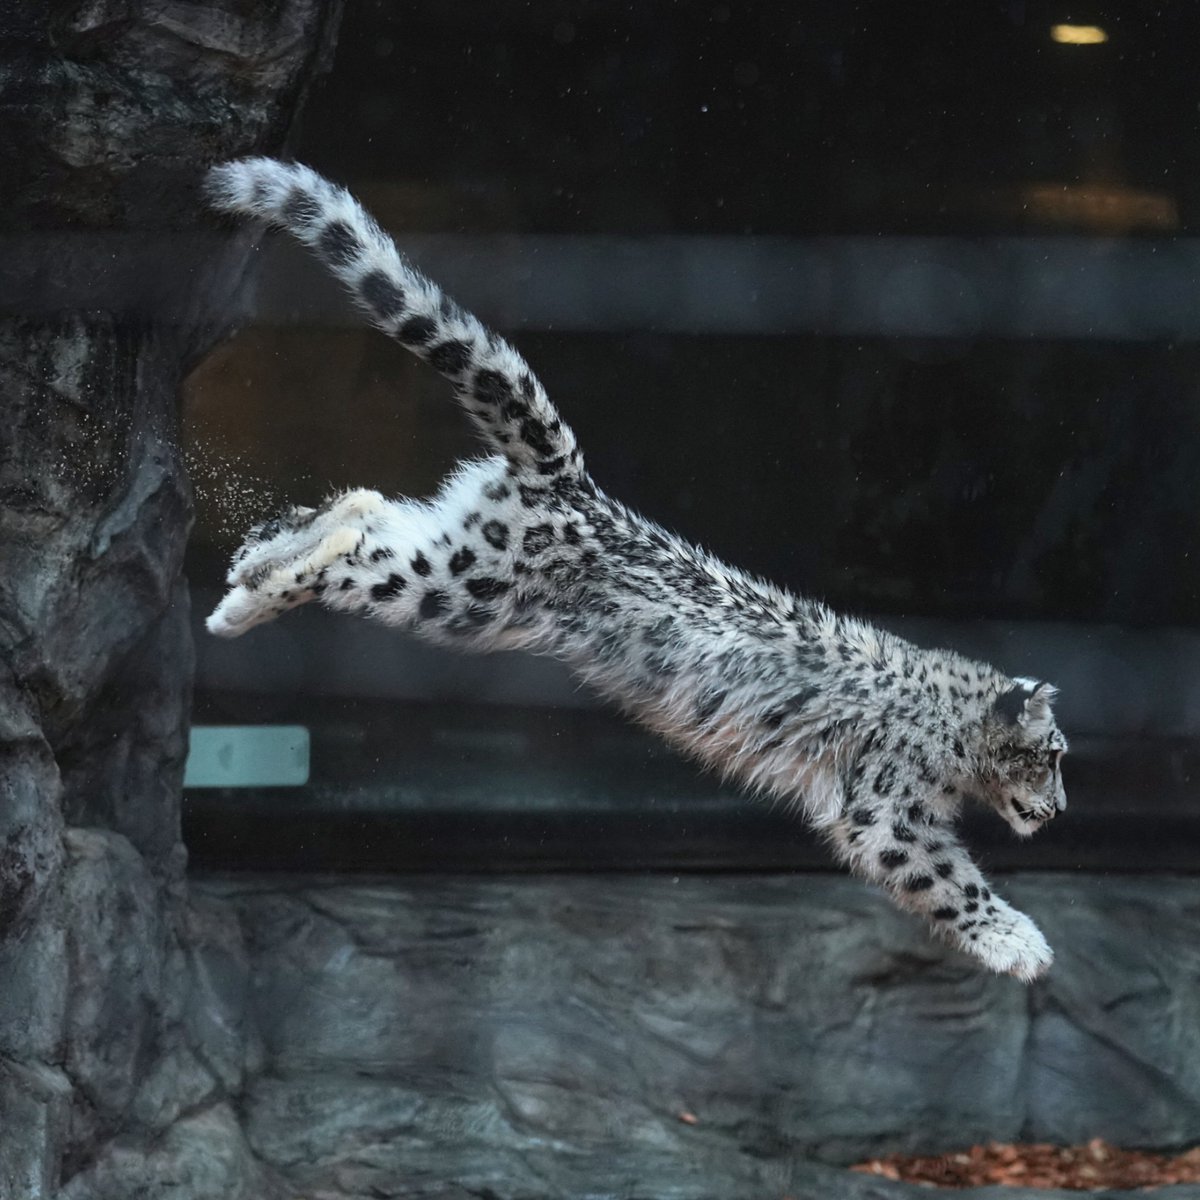 雨でも元気に走り回ったりジャンプする子ども。 #ユキヒョウ #大森山動物園 #snowleopard